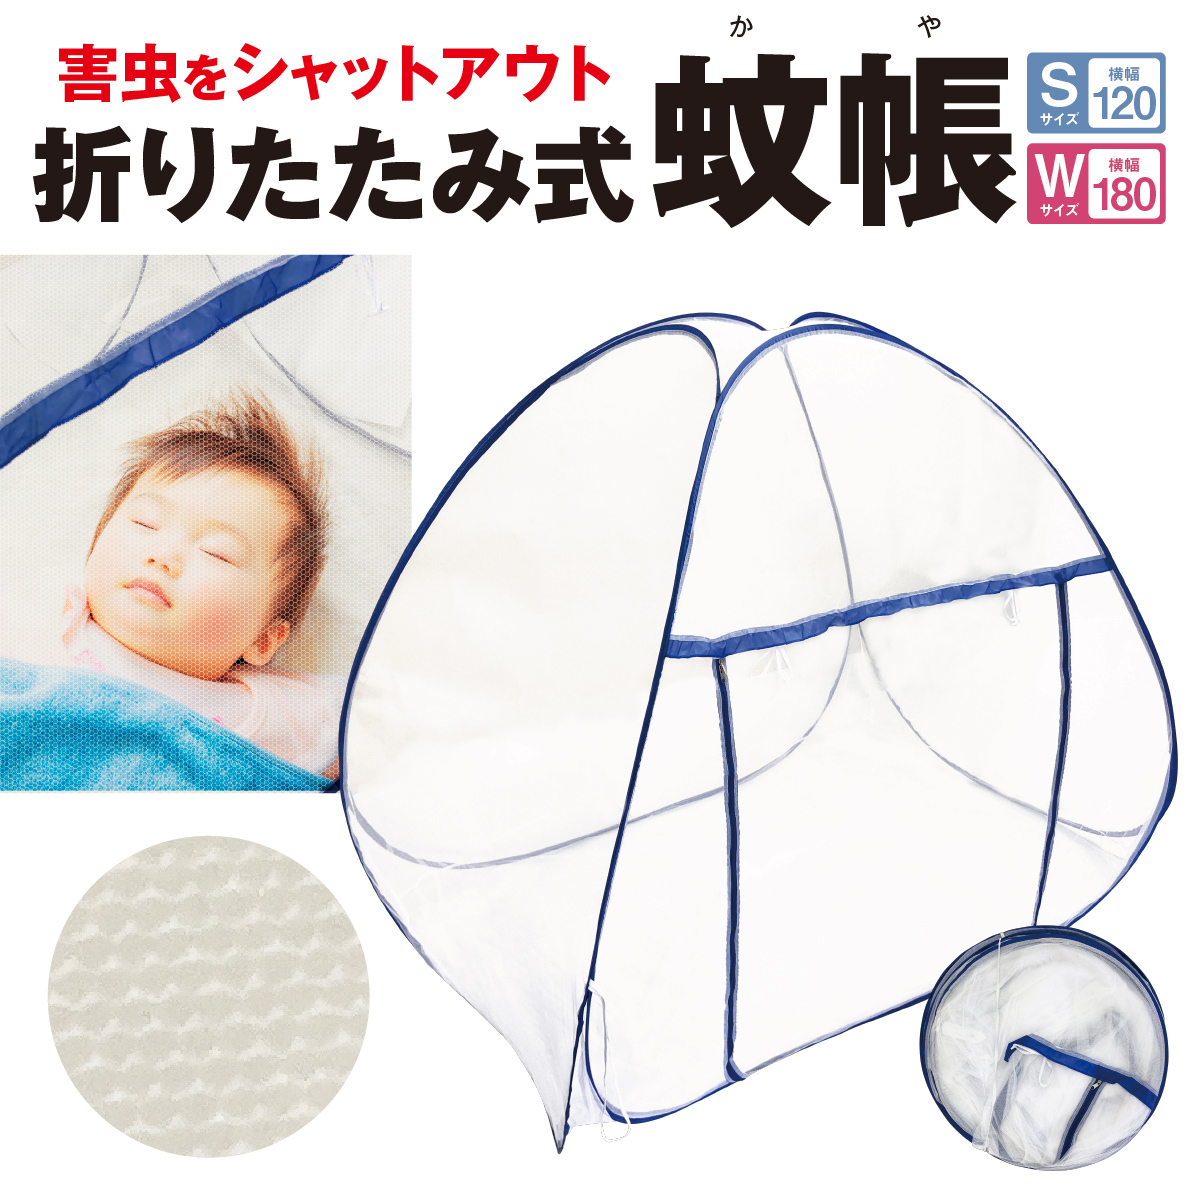 害虫をシャットアウト 折りたたみ式 蚊帳 日本最大級の品揃え ワンタッチ シングル ダブル ベッド用 ムカデ対策 新入荷 流行 屋外 テント m-net キャンプ かや